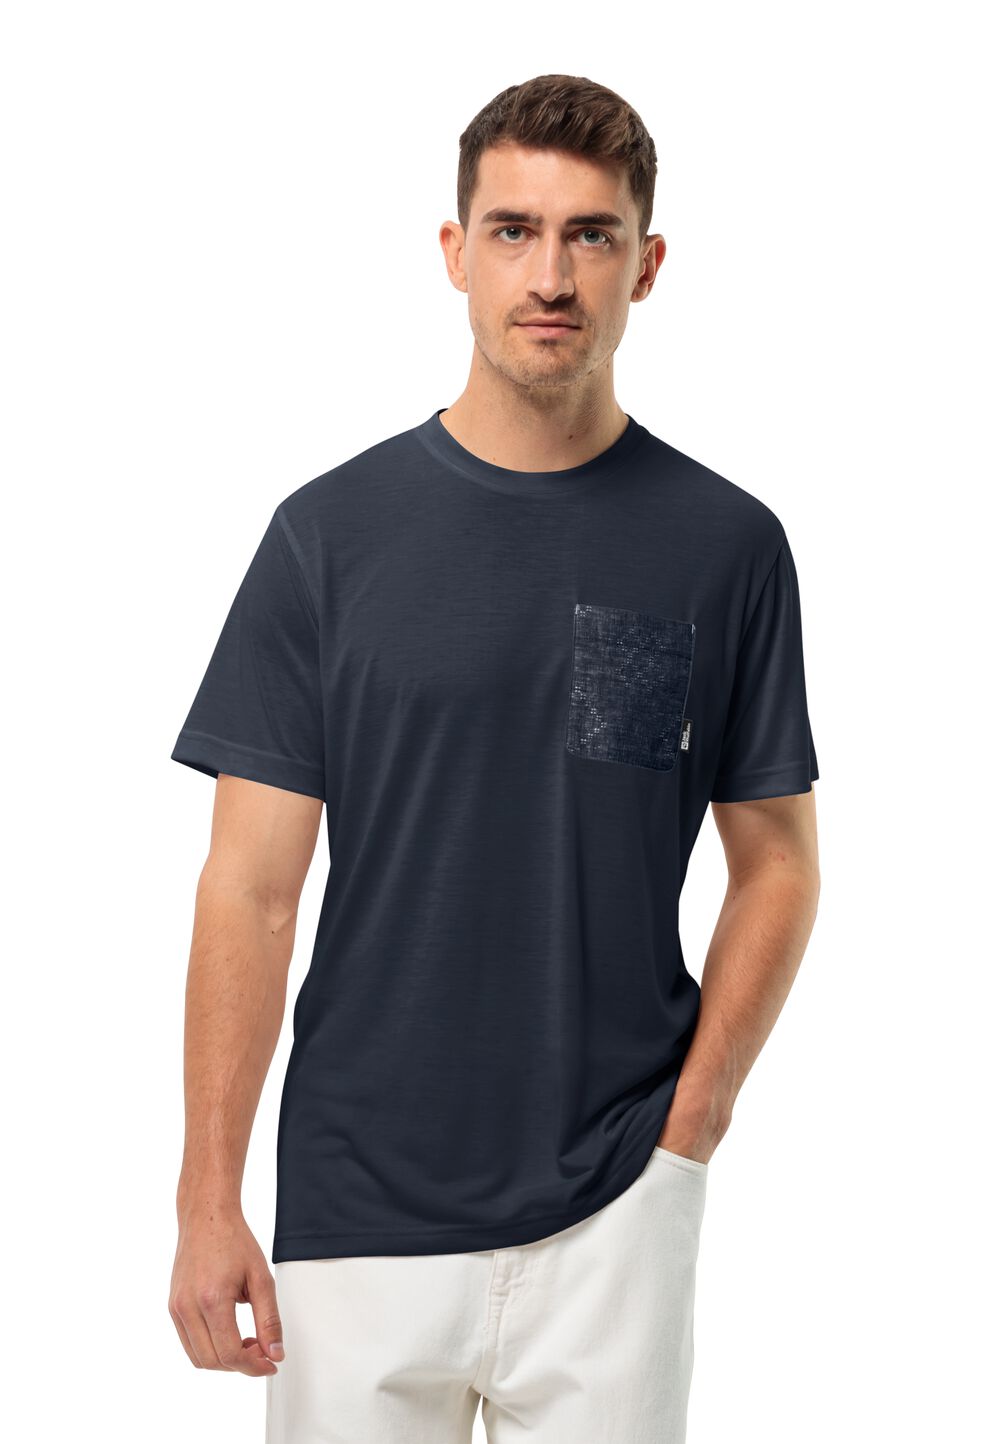 Jack Wolfskin Pocket Karana T-Shirt Men Functioneel shirt Heren 3XL blue night blue